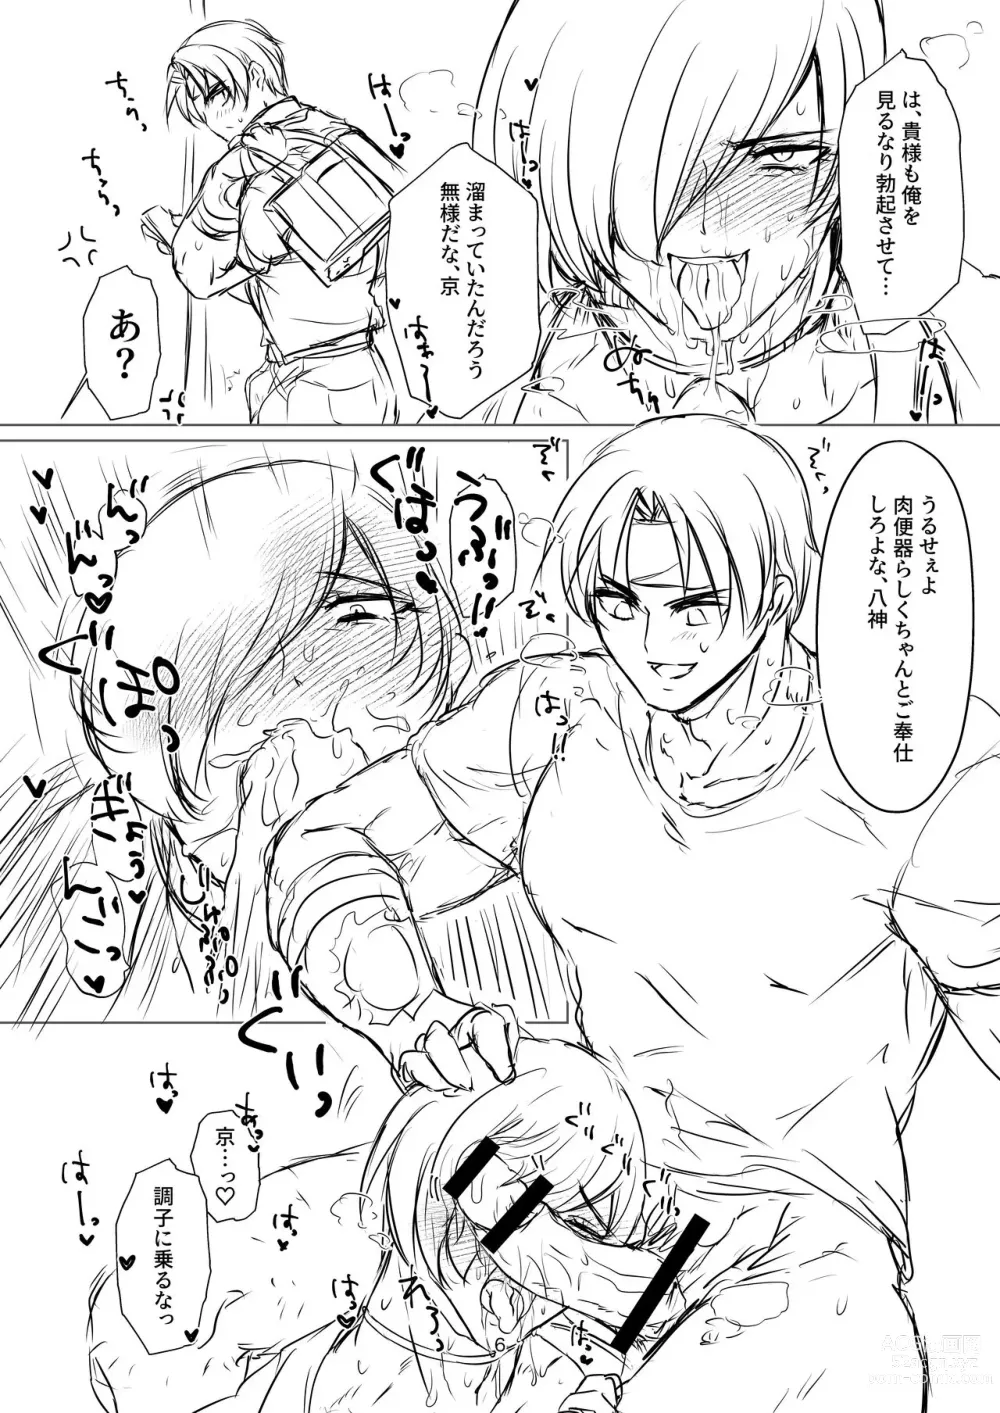 Page 6 of doujinshi R18 Manga EAT ME!